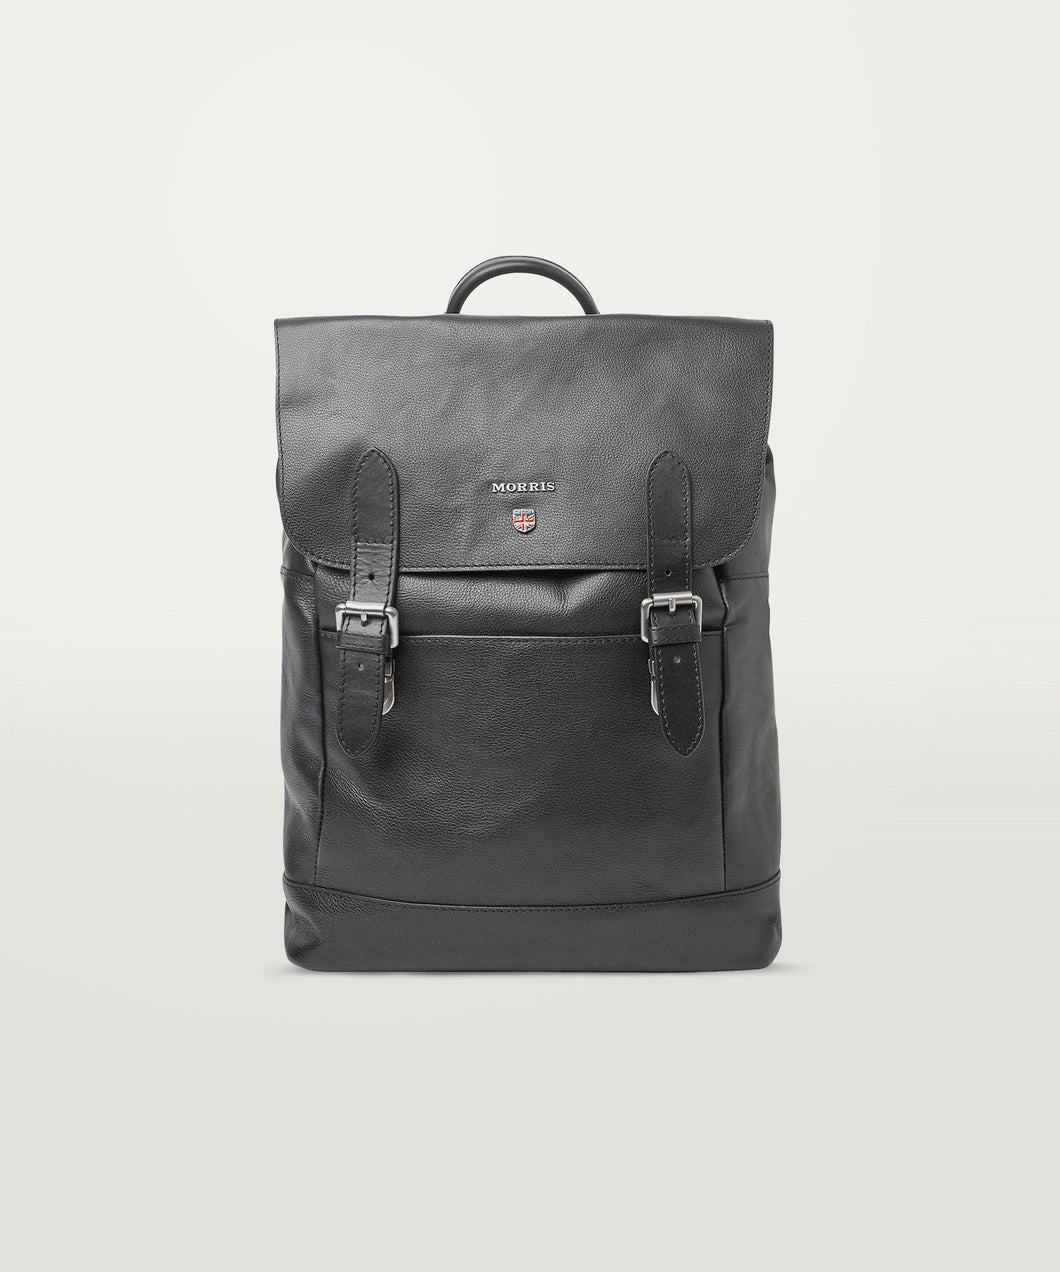 Brydon Leather Backpack Black - Morris Stockholm